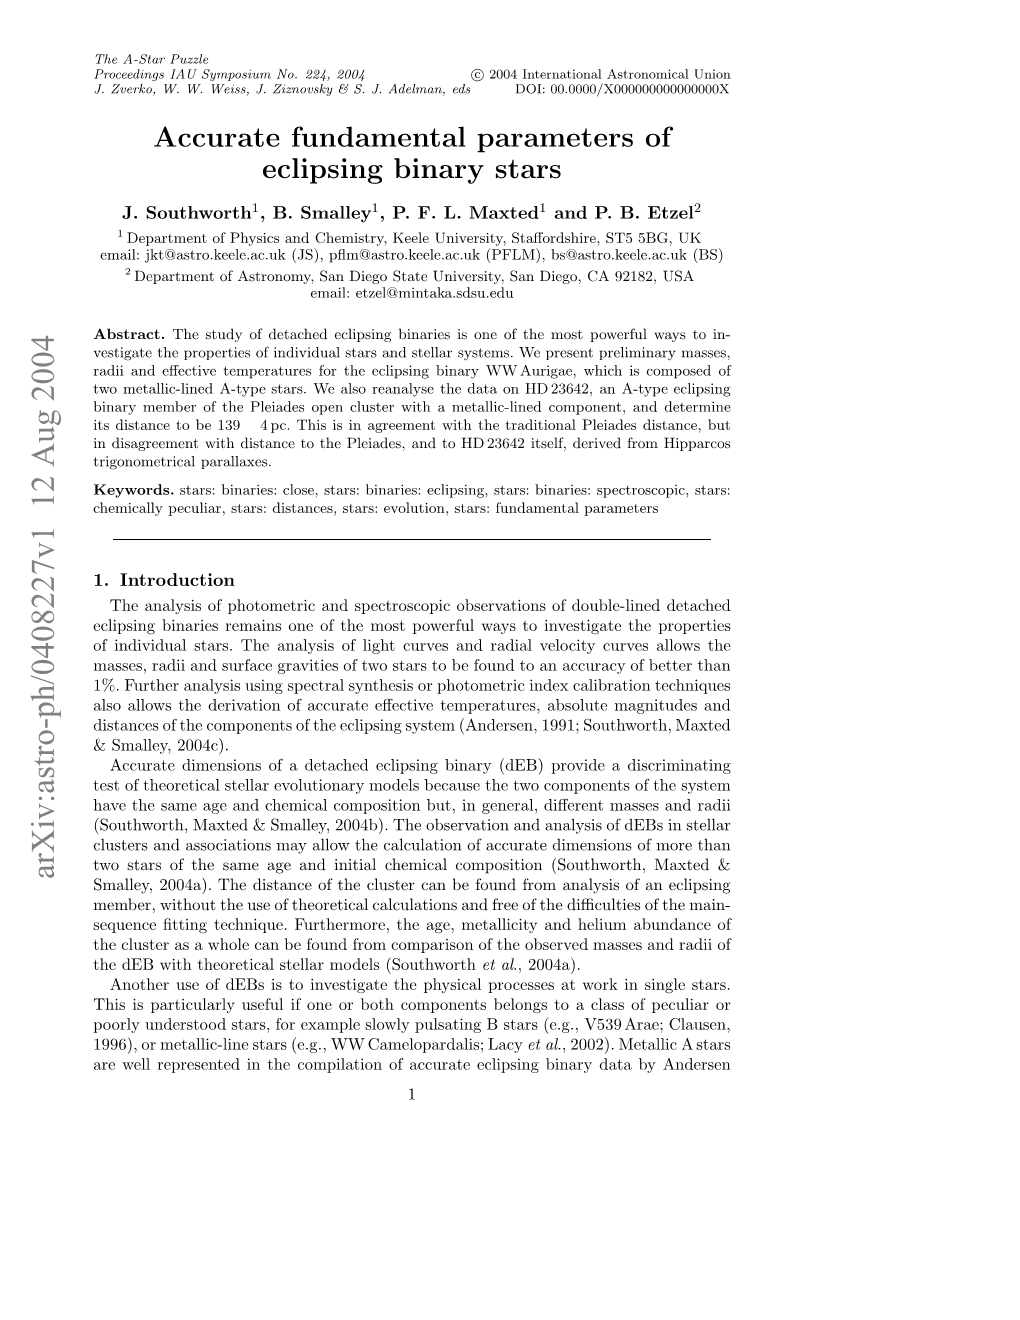 Accurate Fundamental Parameters of Eclipsing Binary Stars 3 Castellani Et Al